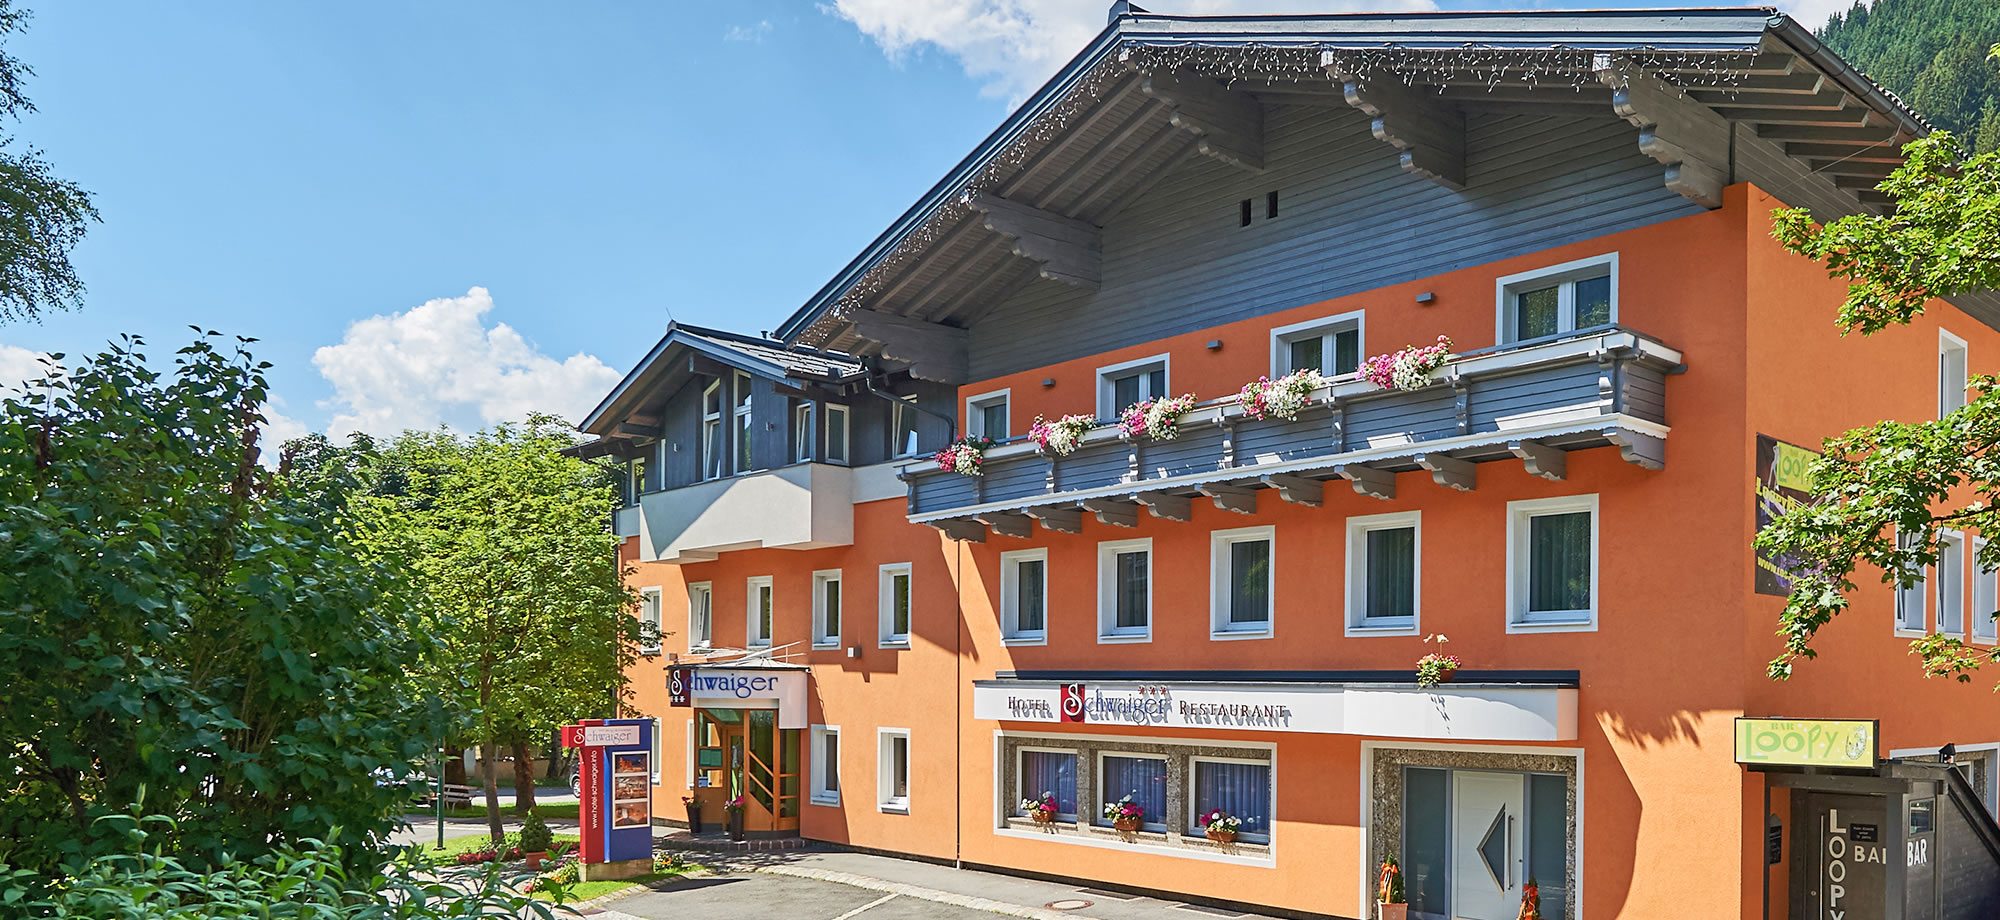 Sommerurlaub im Hotel Schwaiger in zentraler Lage in Eben im Pongau mitten im Salzburgerland